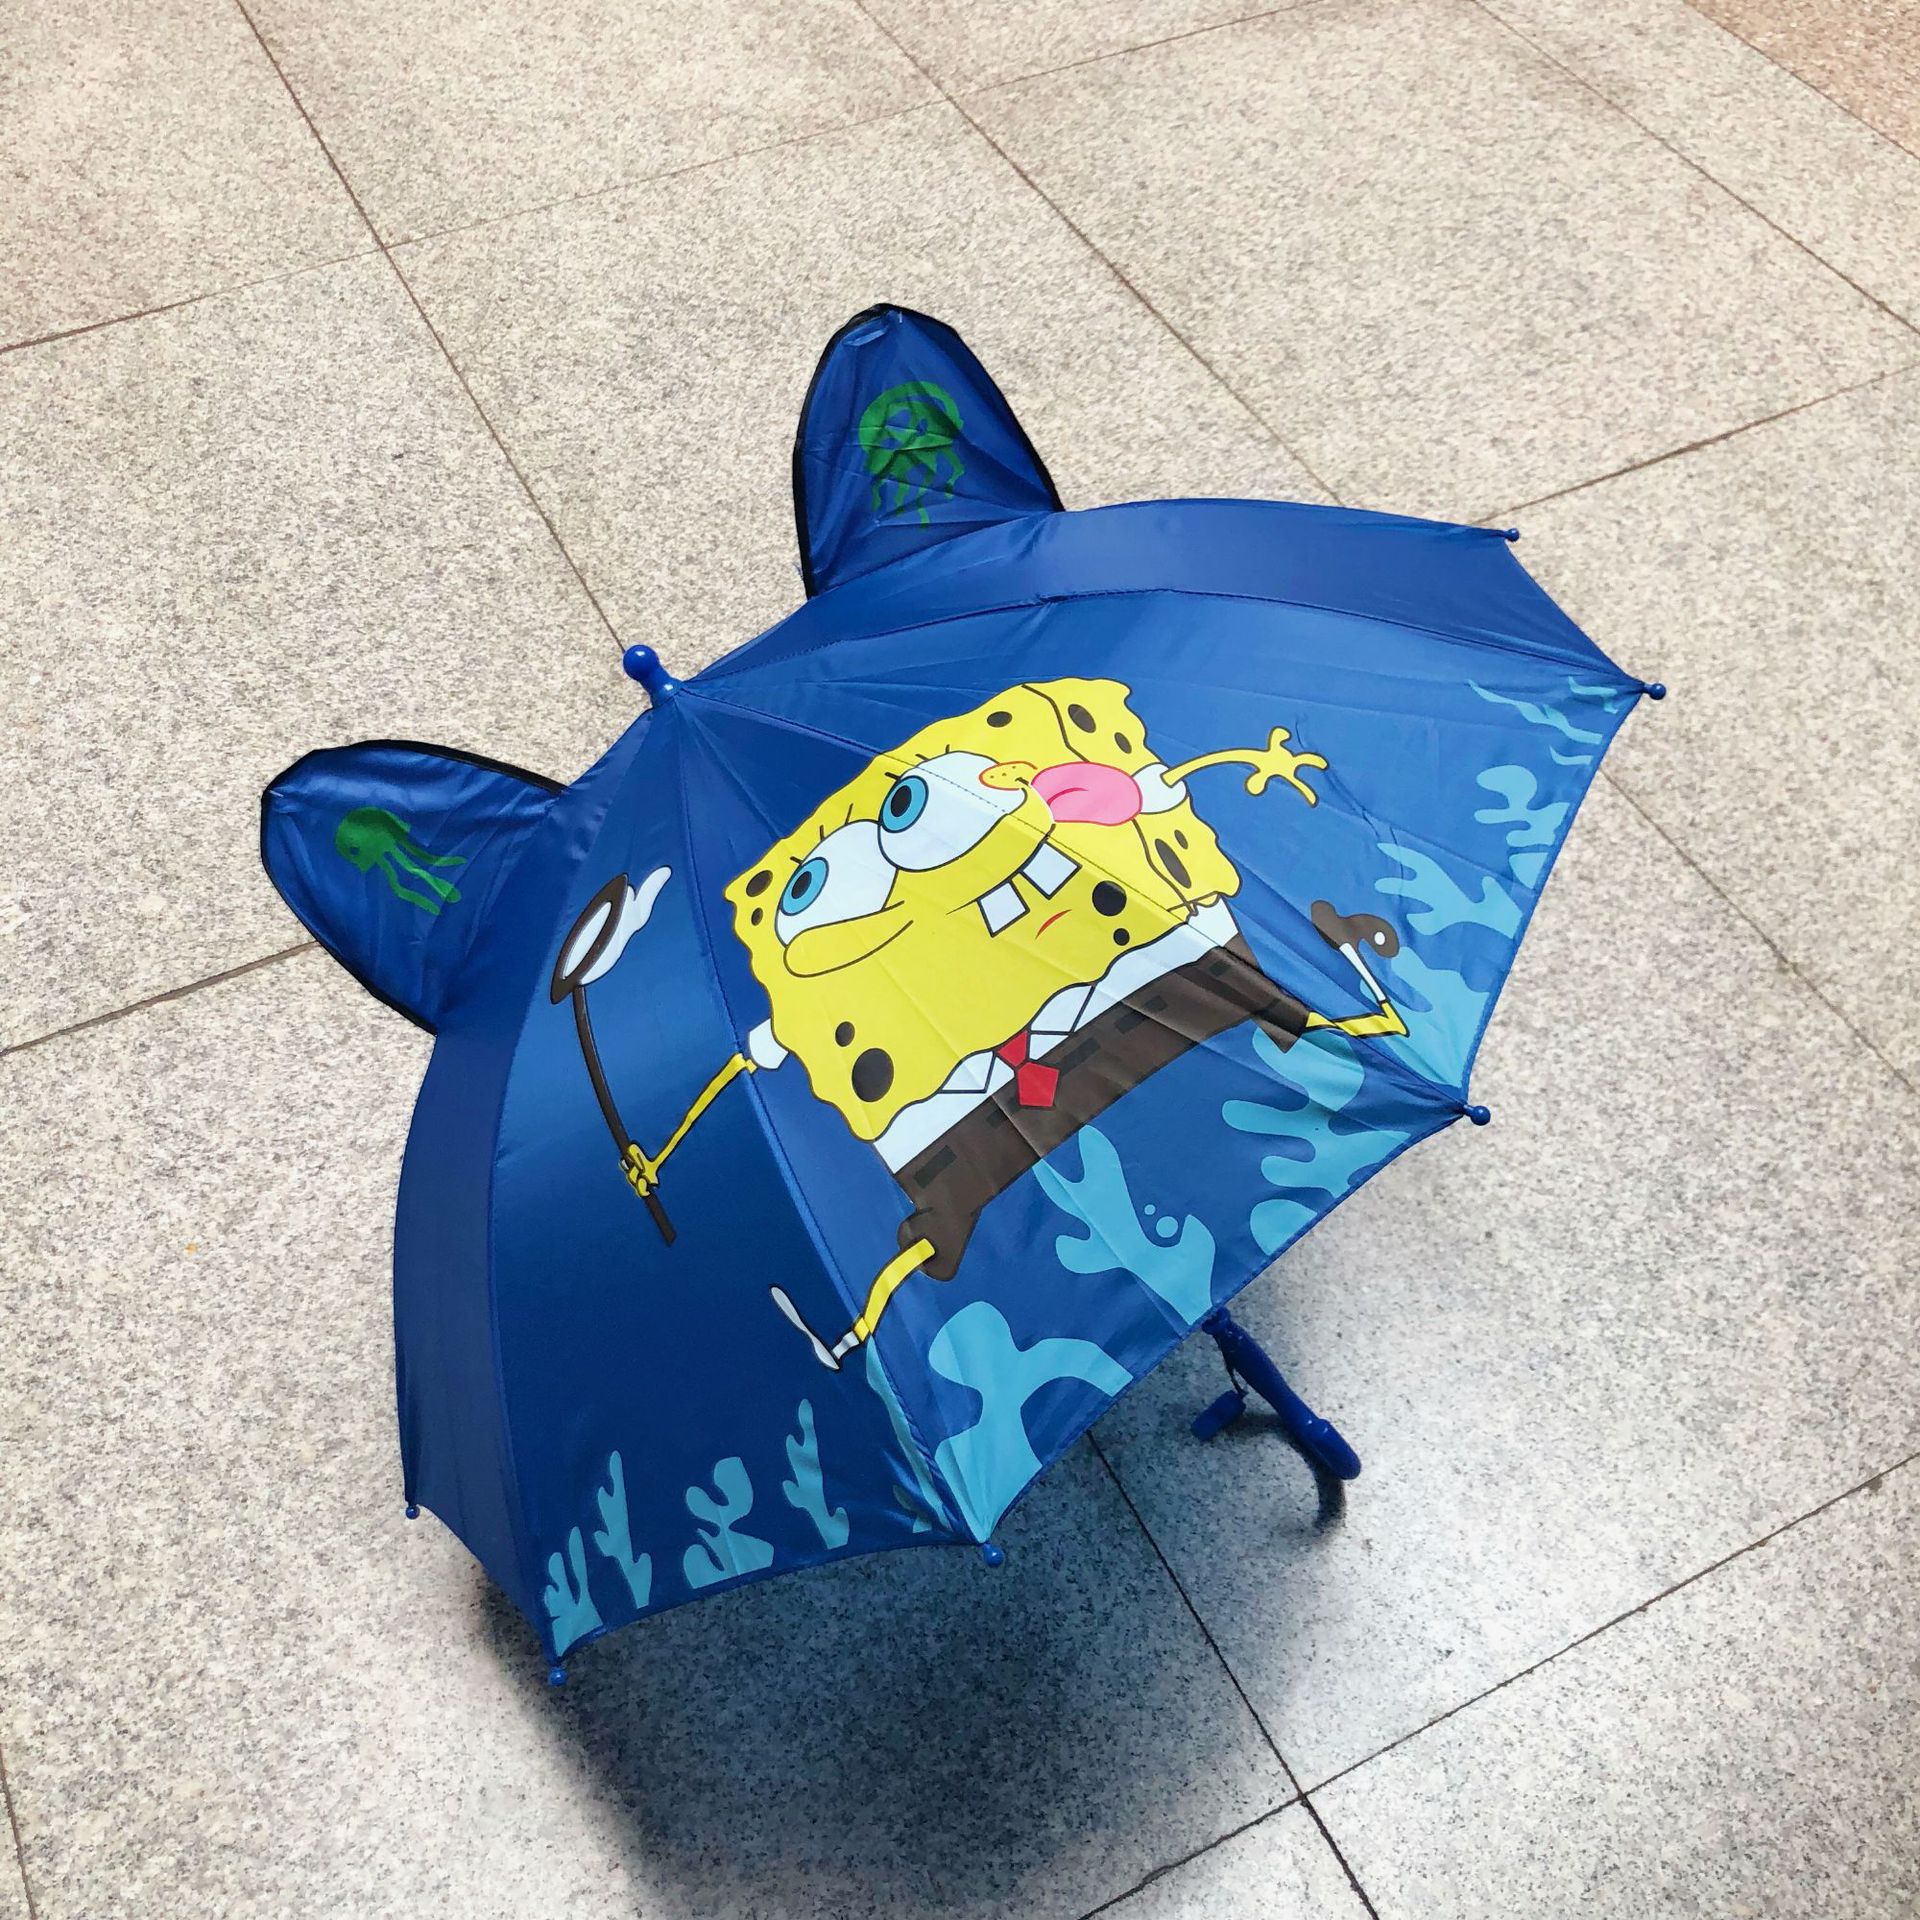 umbrellaสร้างสรรค์ร่มเด็กน่ารักร่มลายการ์ตูนร่มรูปผีเสื้อเด็กสัตว์รูปร่างร่ม1-8ปี